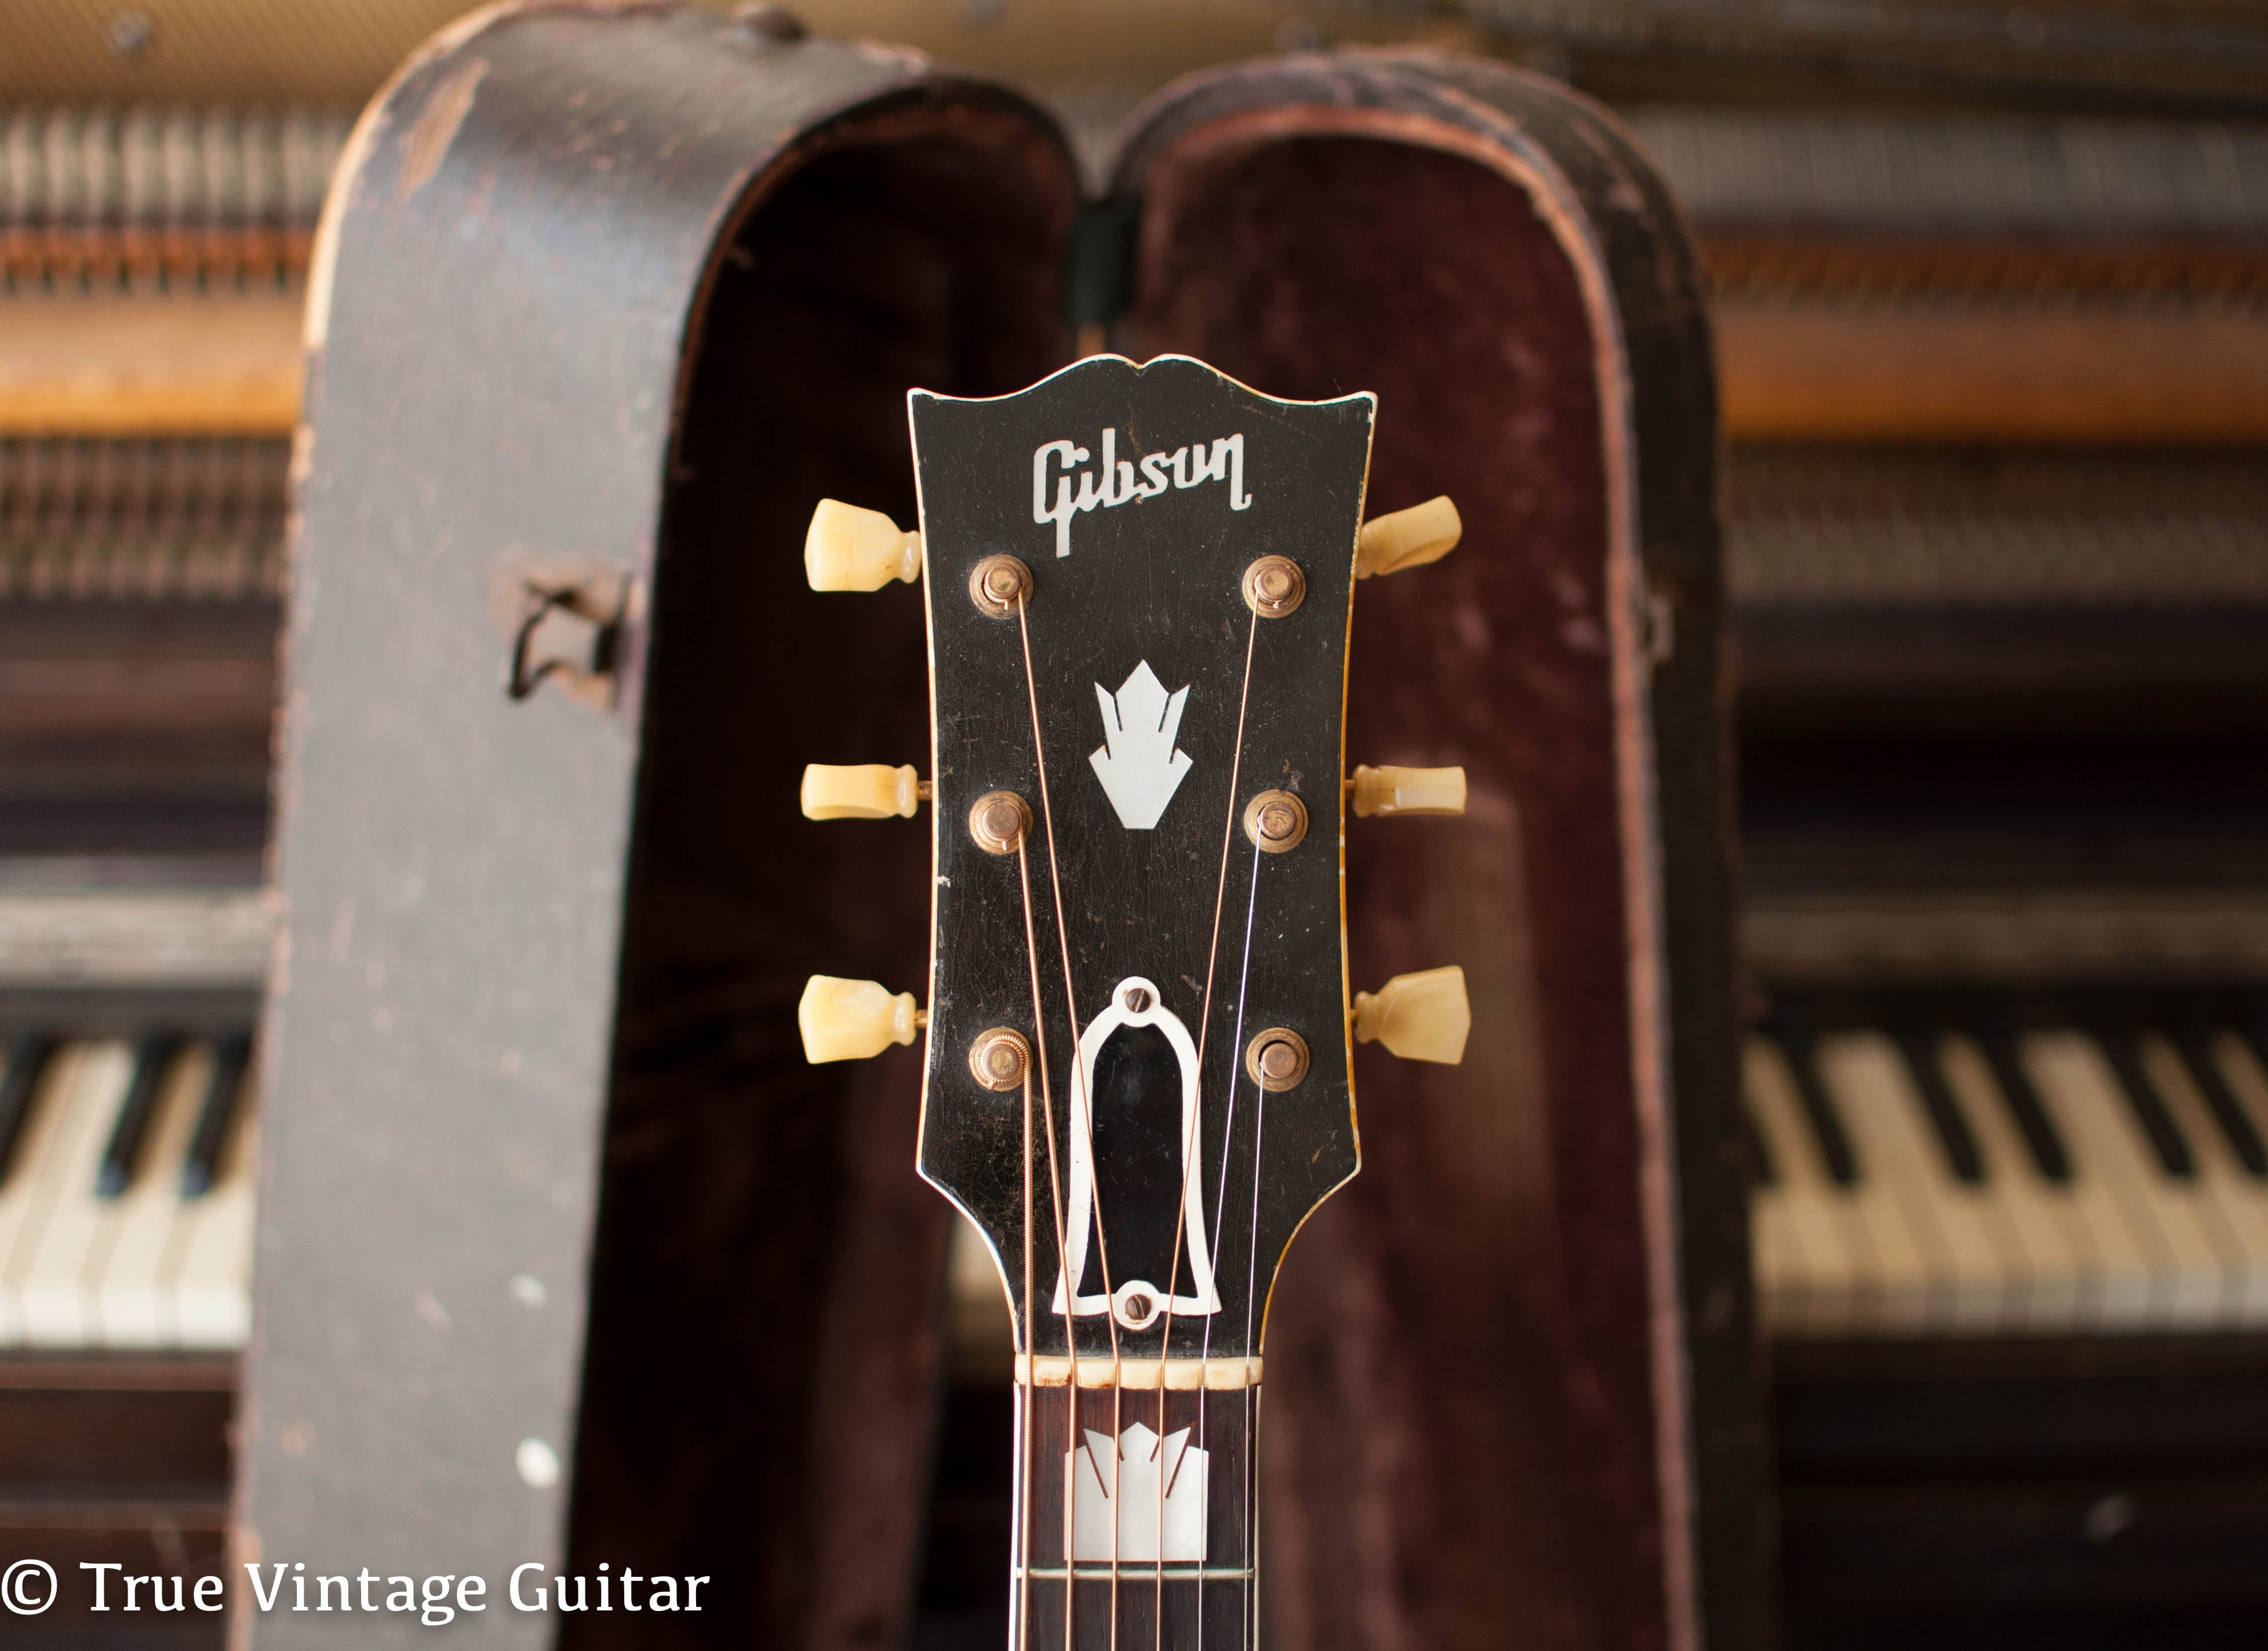 Gibson headstock, pearl inlay, 1948 Gibson SJ-200 guitar